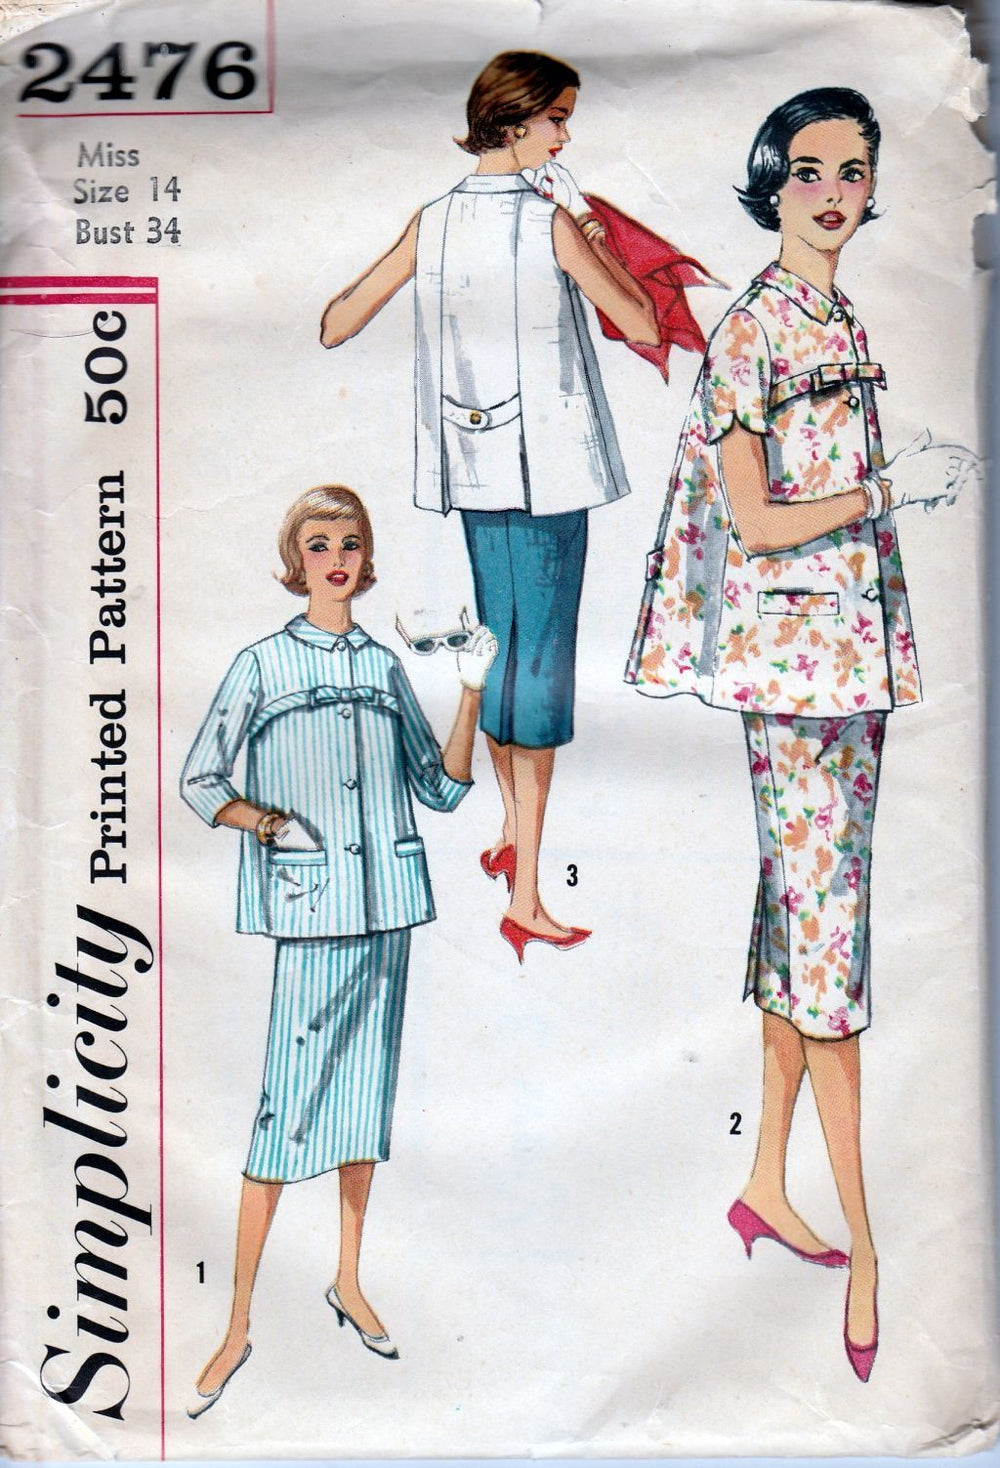 Simplicity 2476 Ladies Maternity Suit Dress Vintage Sewing Pattern 1950's - VintageStitching - Vintage Sewing Patterns